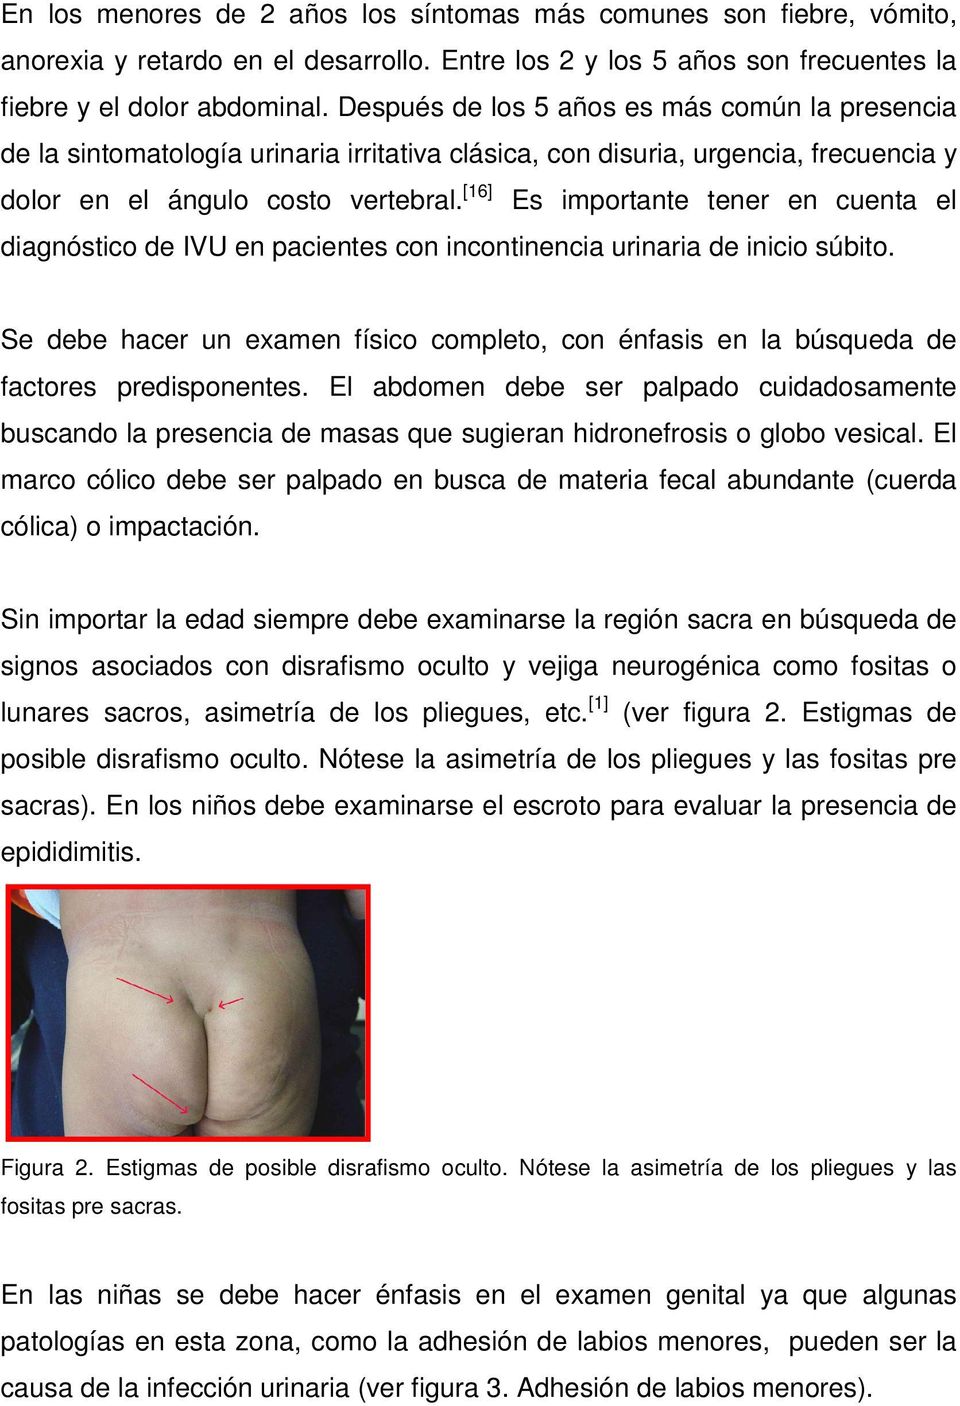 [16] Es importante tener en cuenta el diagnóstico de IVU en pacientes con incontinencia urinaria de inicio súbito.